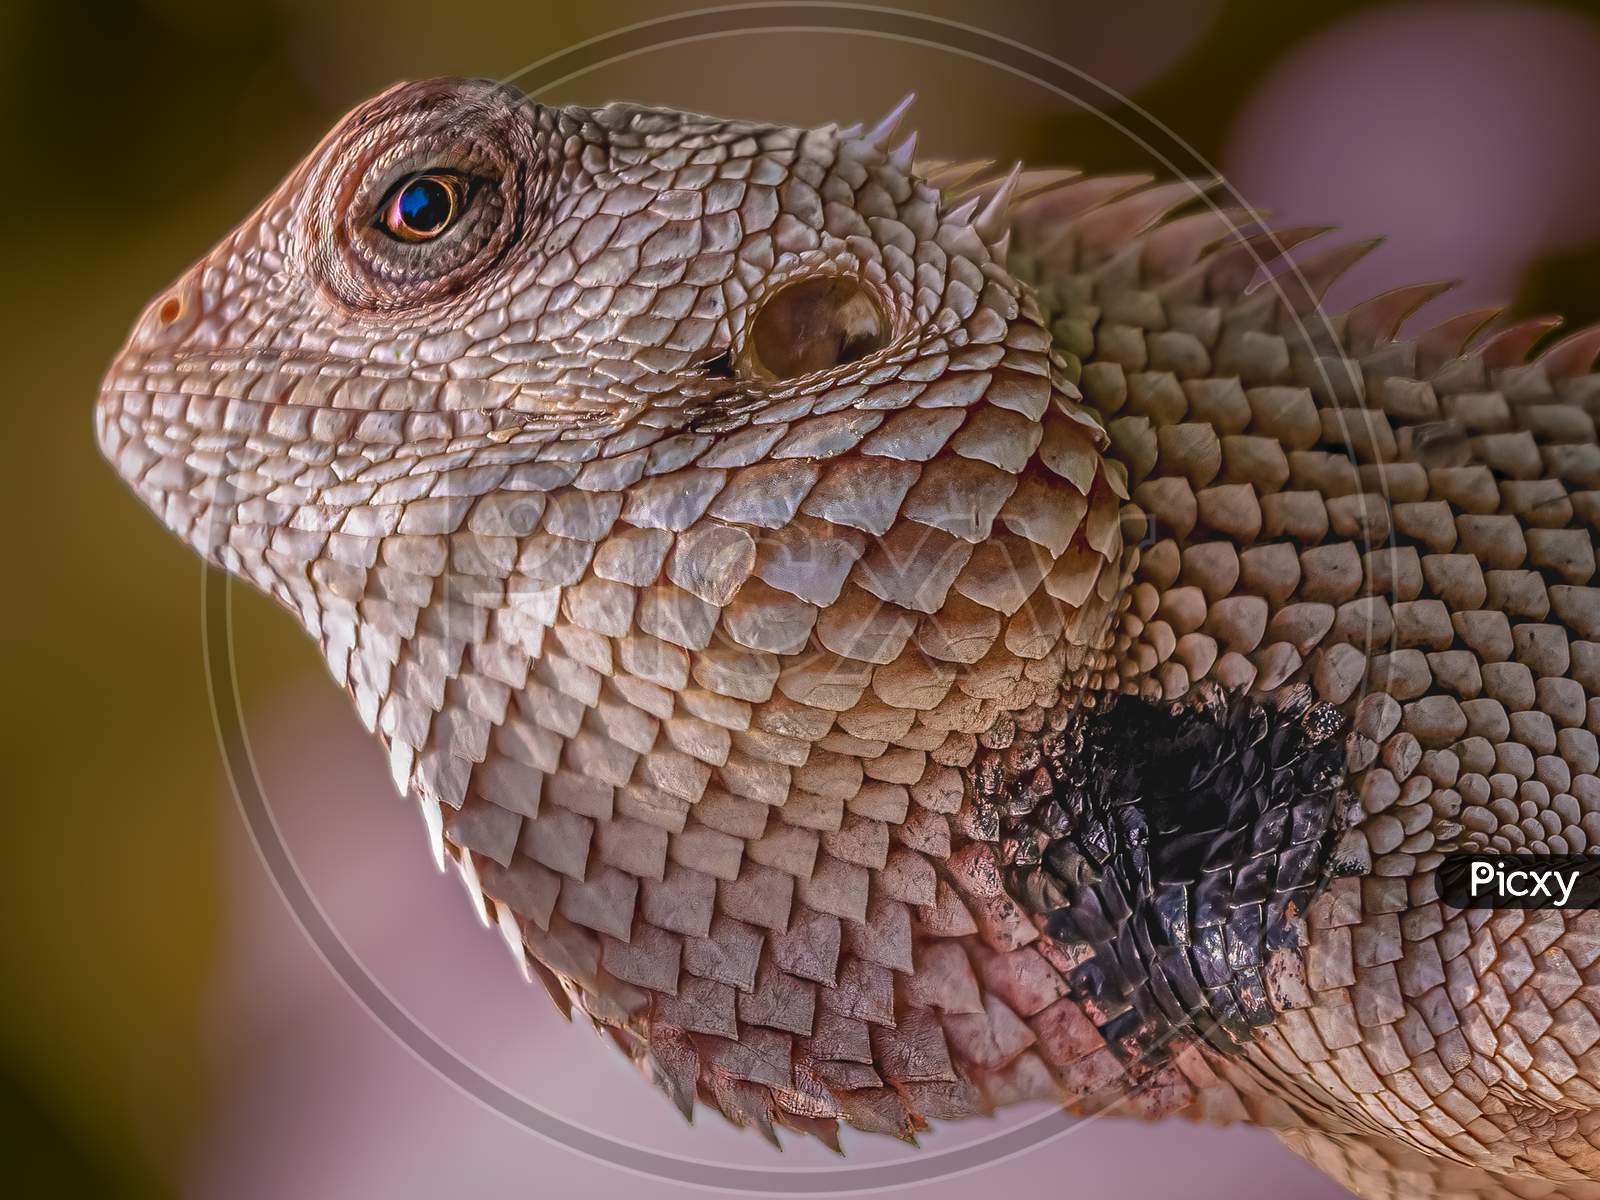 Indian chameleon